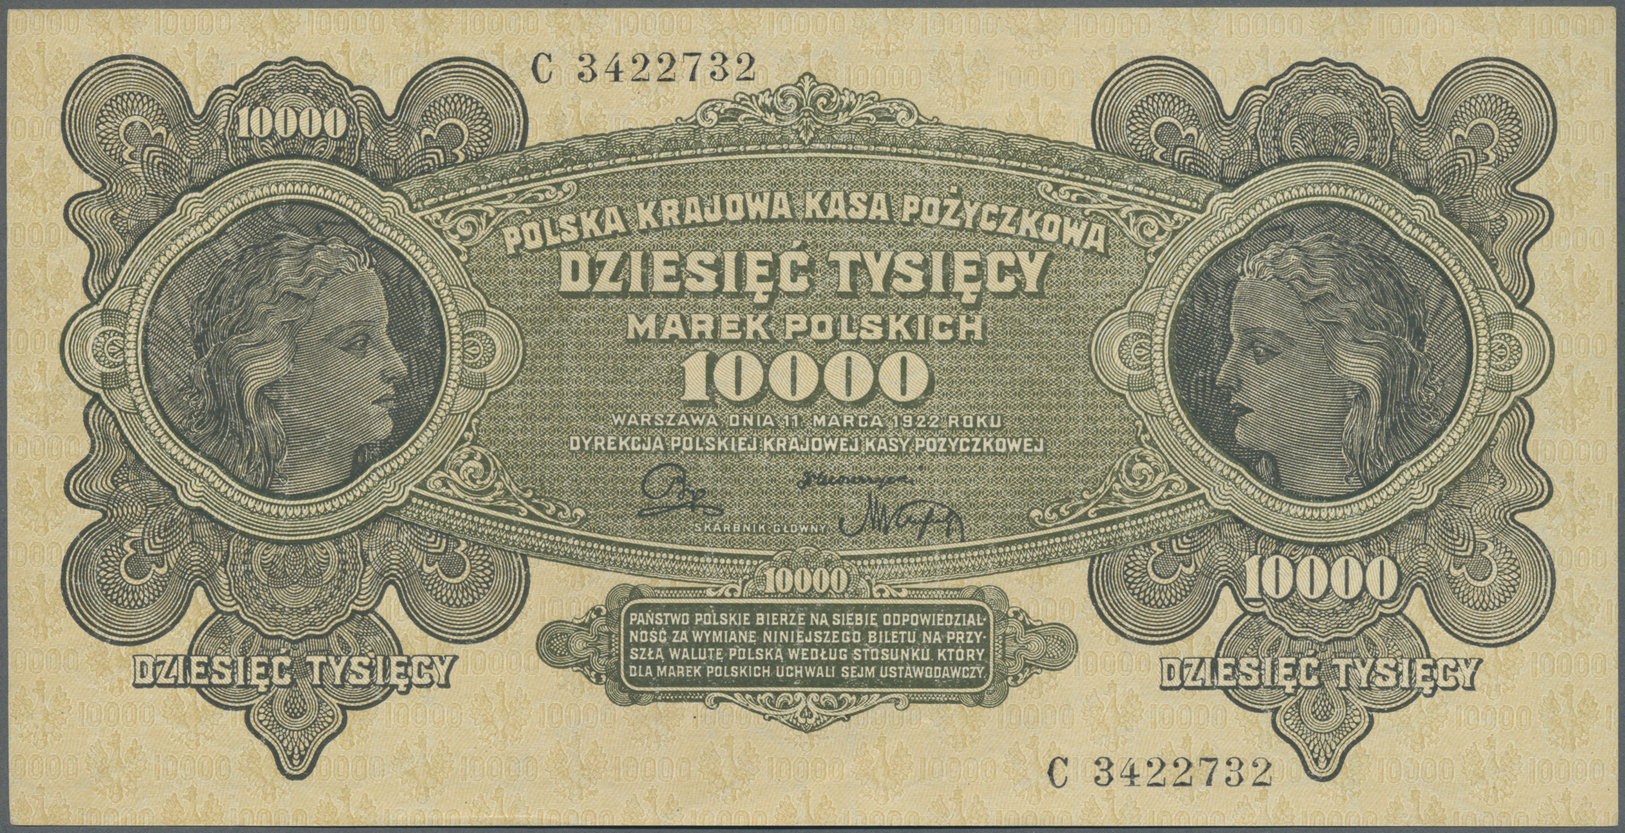 01980 Poland / Polen: 10.000 Zlotych 1922 P. 32 In Condition: AUNC. - Poland